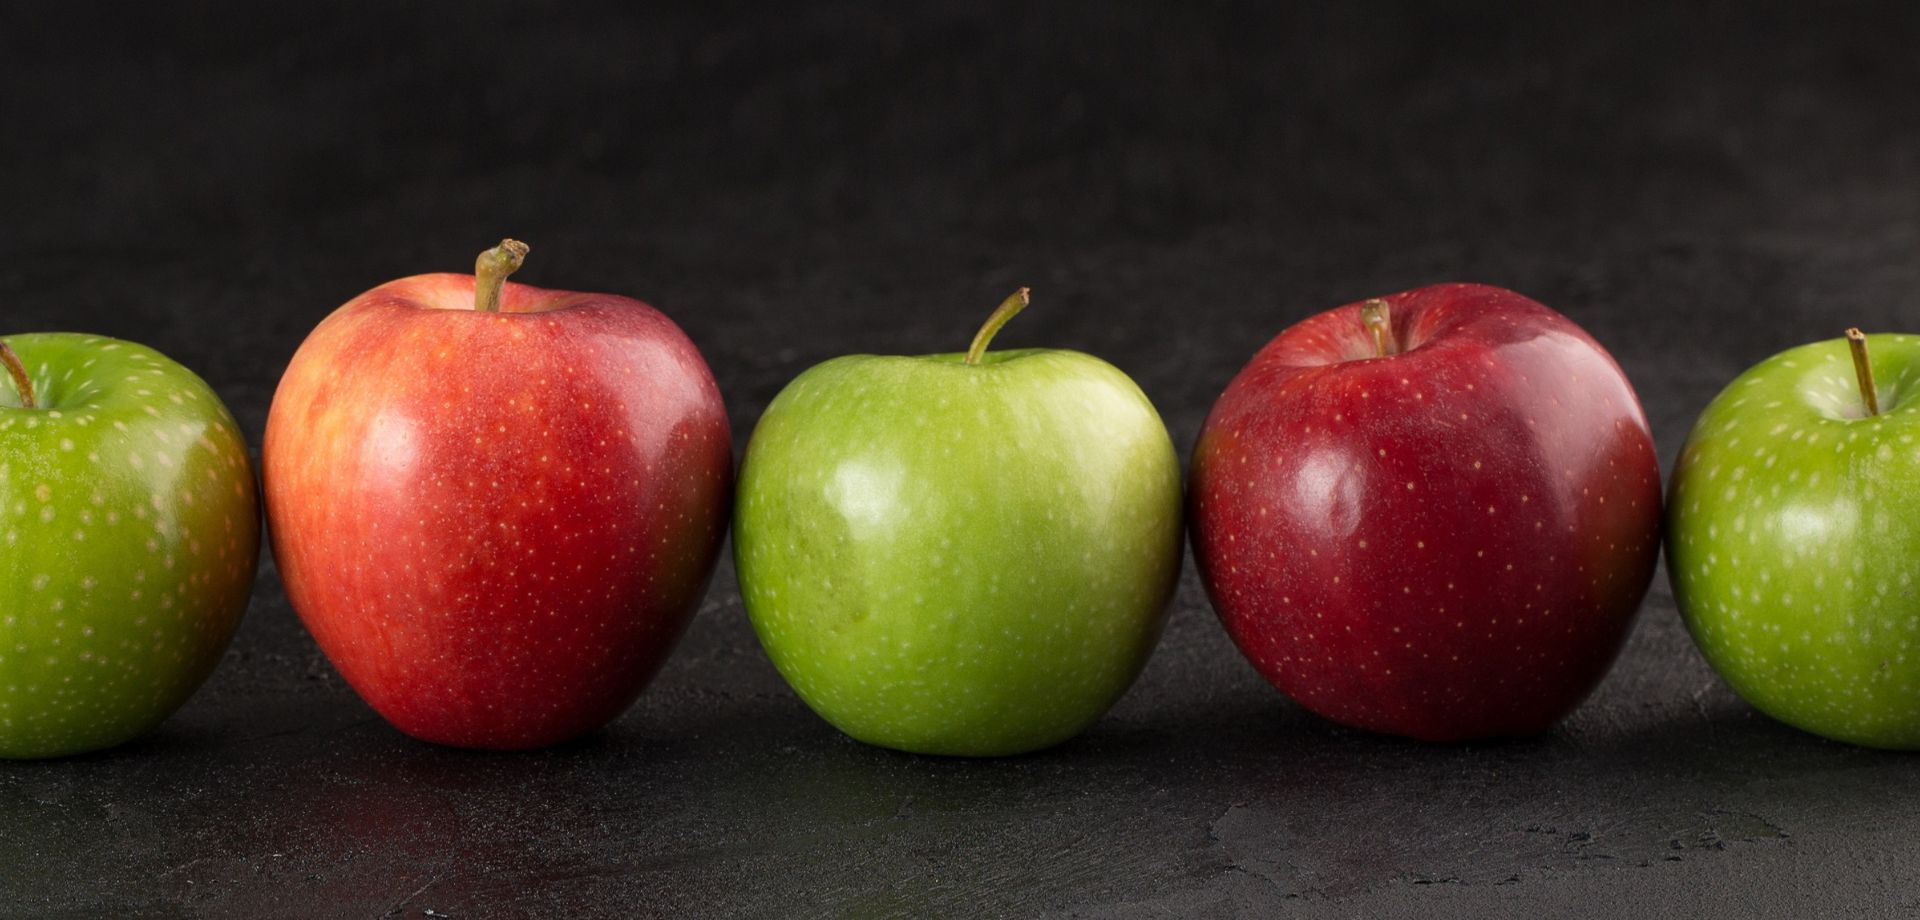 Beneficios del vinagre de manzana para tu cuerpo